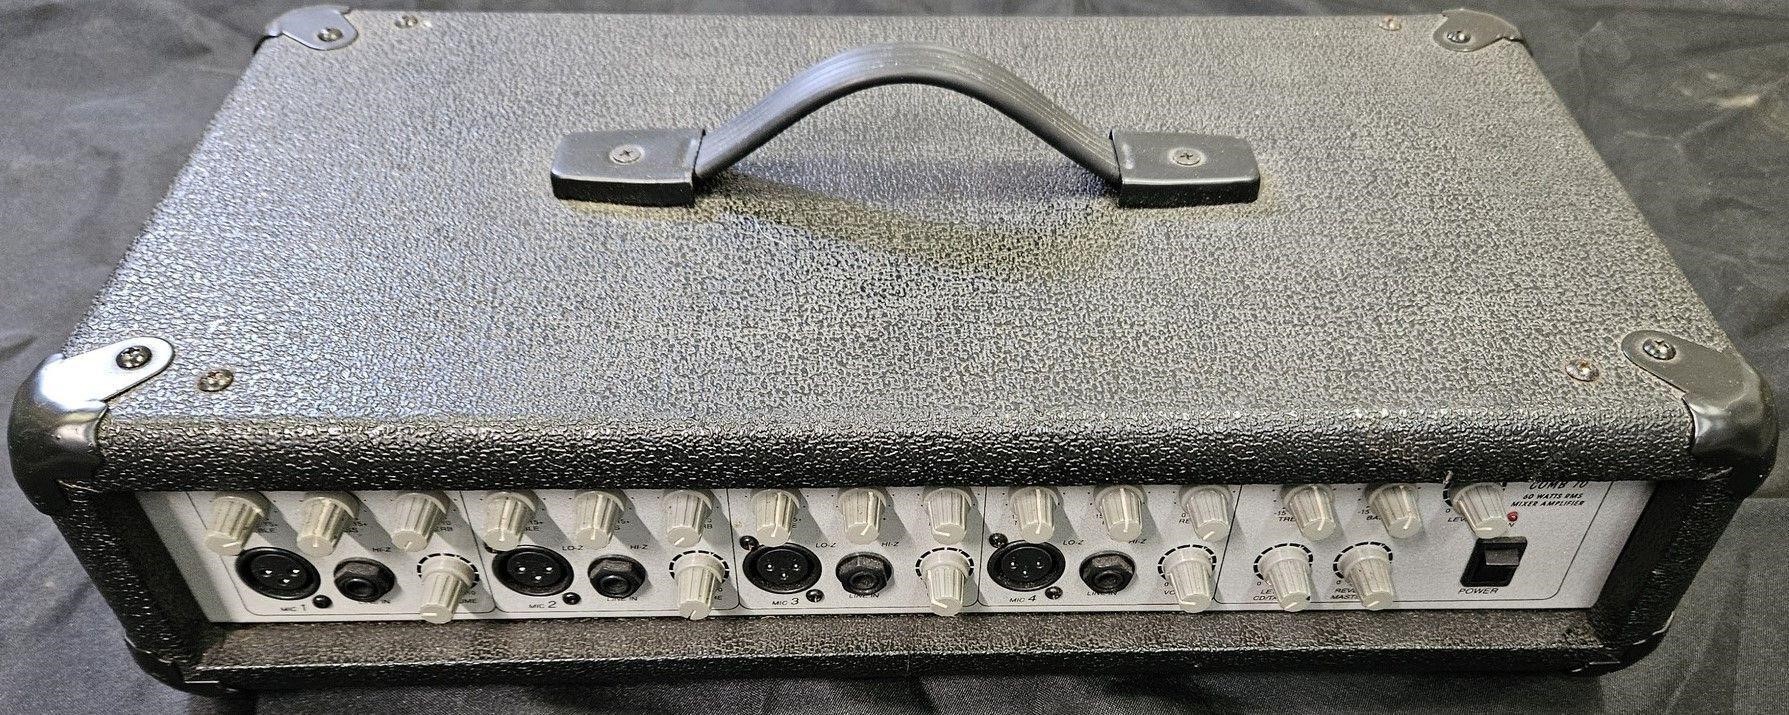 Comb 70 - 60 watt mixer / amp.